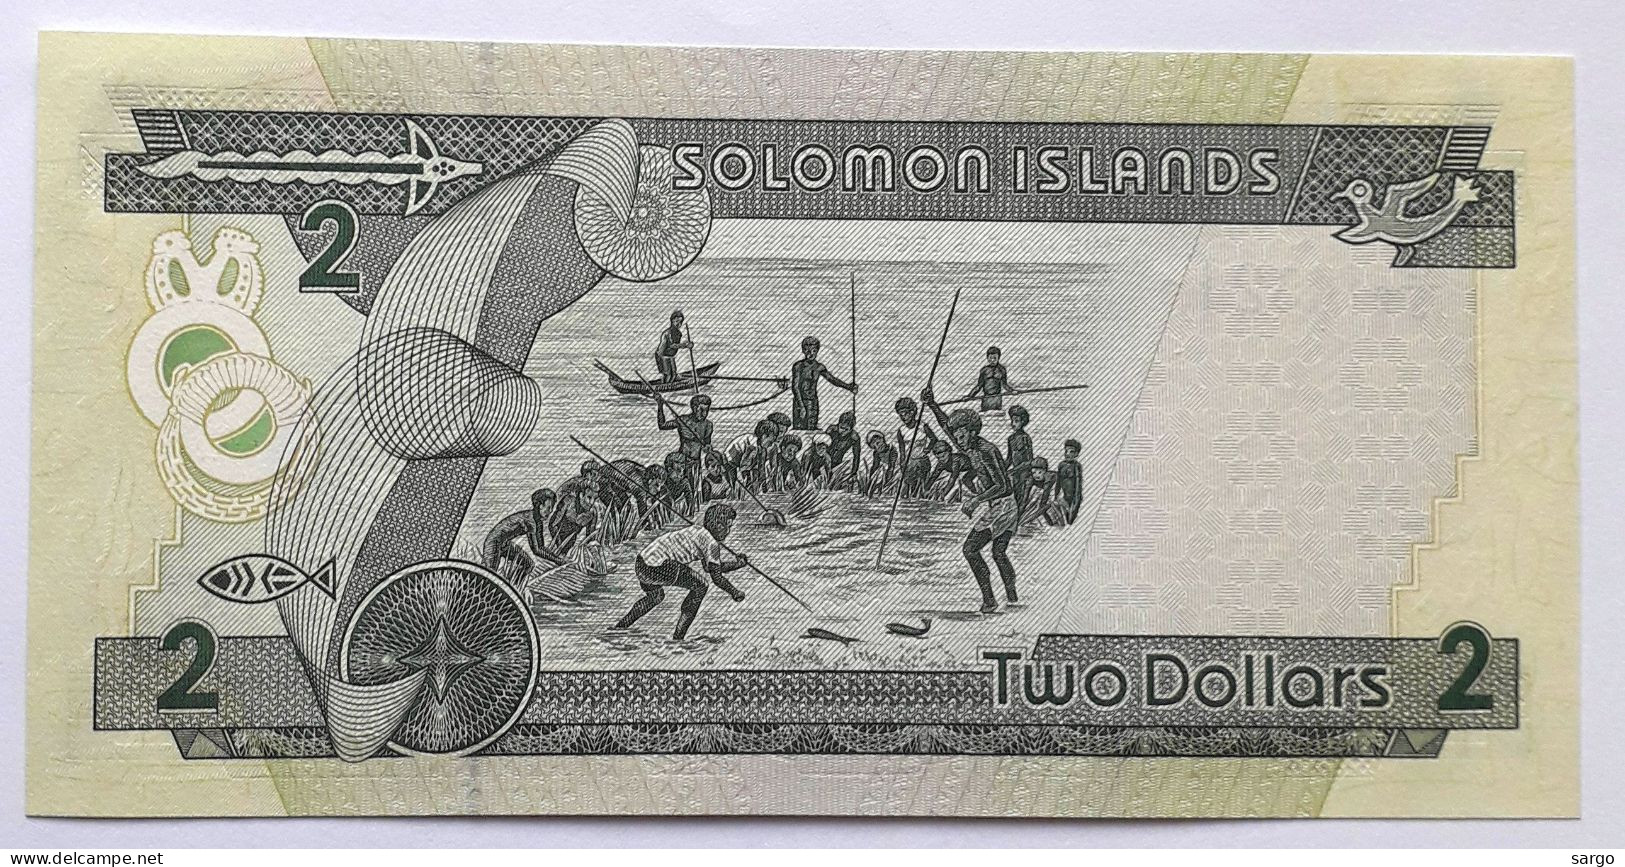 SOLOMON  - 2 DOLLARS - P 18  (1997) - UNC -  BANKNOTES - PAPER MONEY - São Tomé U. Príncipe